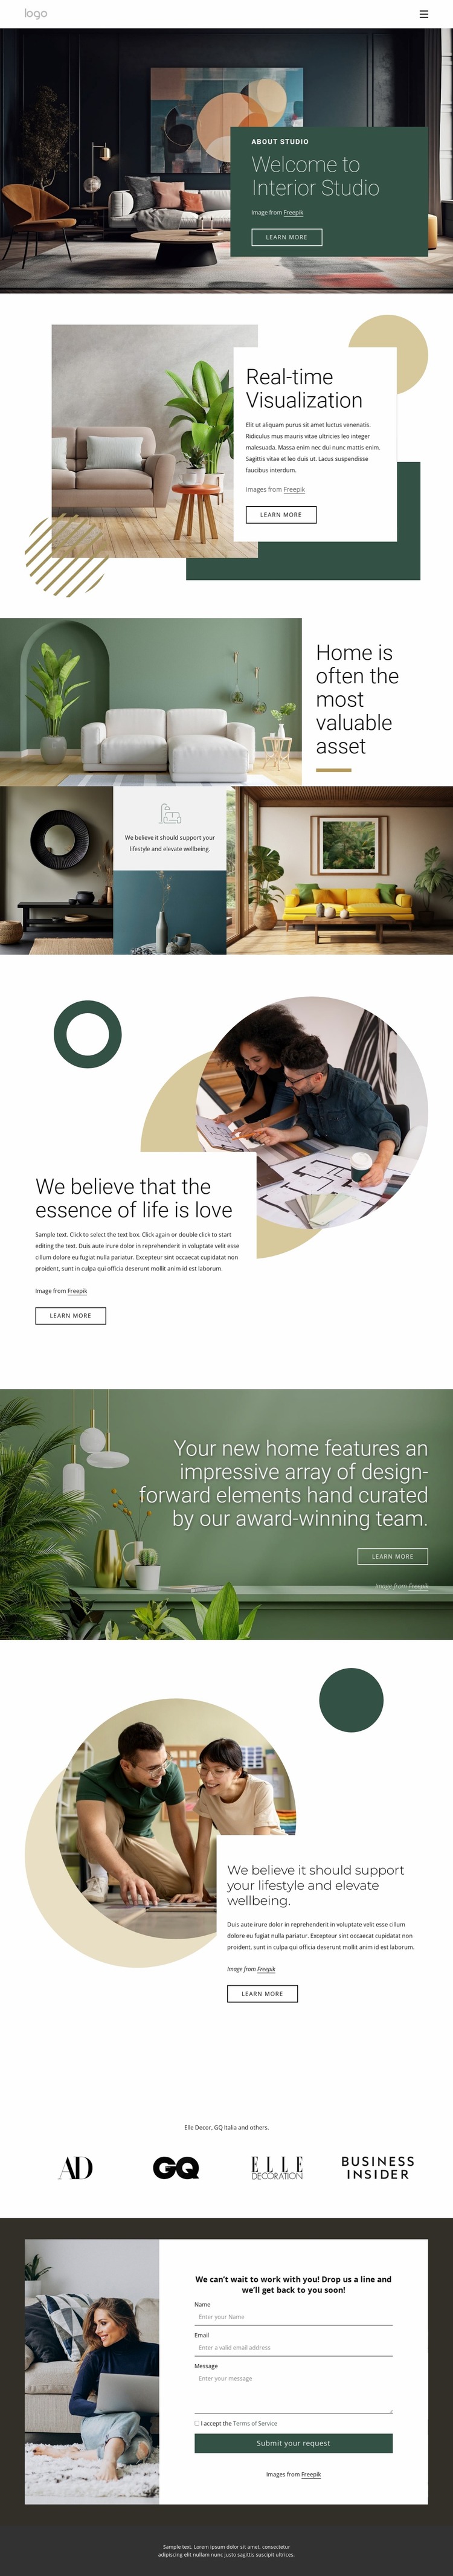 Award-winning interior design studio Website Mockup